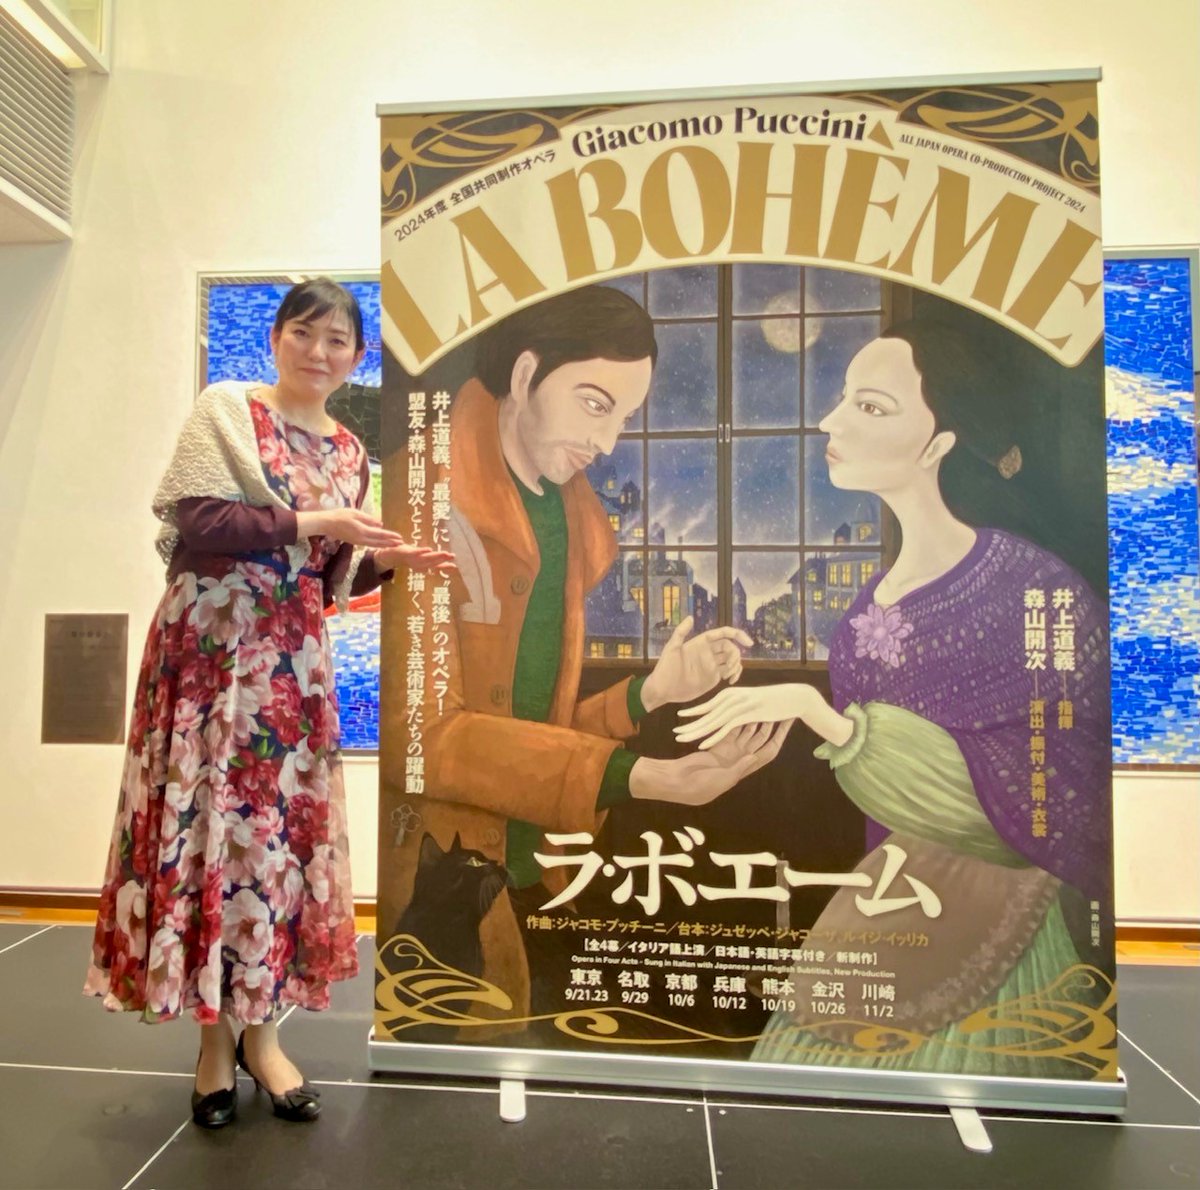 全国共同制作オペラ『#ラ・ボエーム』の記者発表会が行われ、ミミ役で出演するSop.#髙橋絵理 が登壇致しました。 #井上道義 マエストロ“最後のオペラ”としてその想いが語られる中、髙橋も敬愛するマエストロに応えようと、このために自身が編んだショールを纏って臨みました。 la-boheme2024.jp